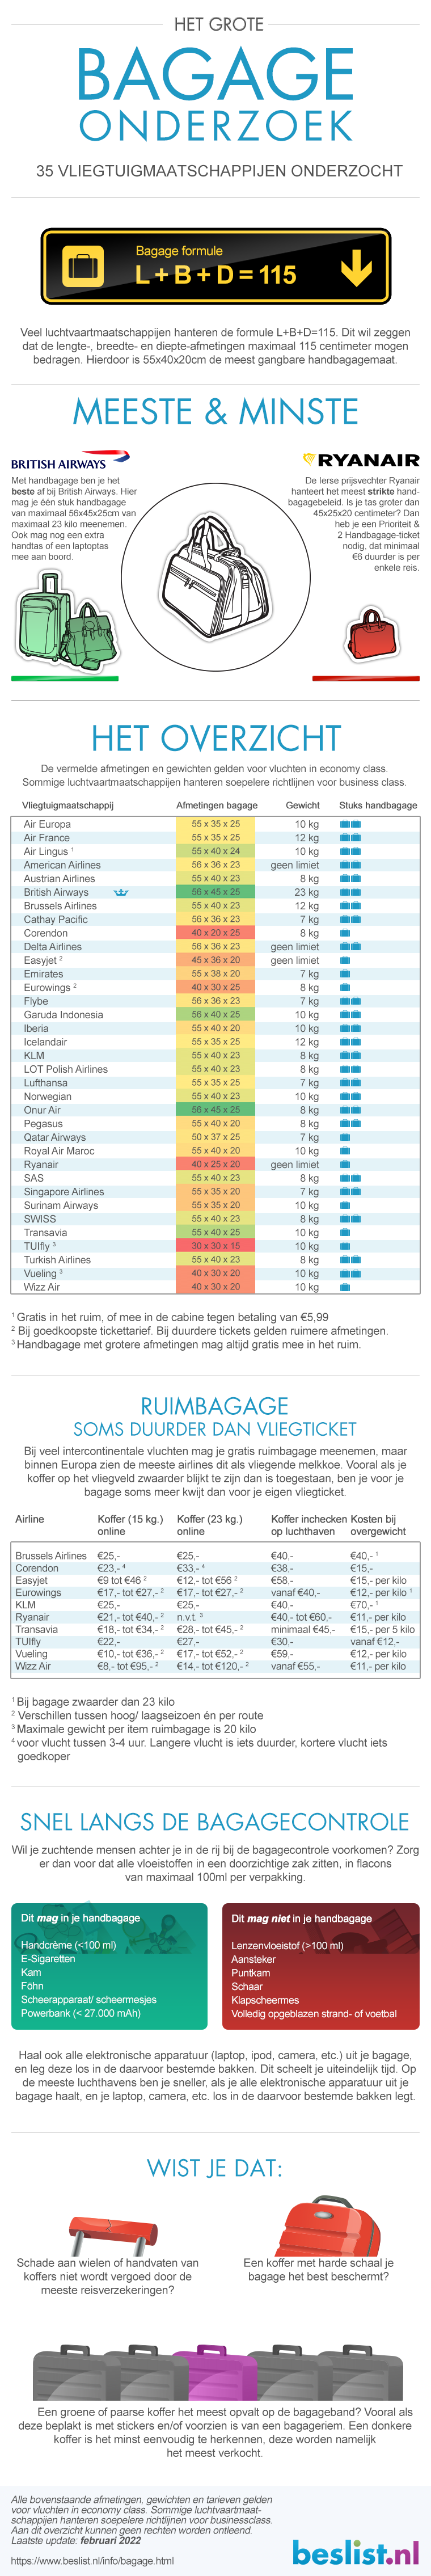 Afmetingen handbagage koffers | Gewicht & formaat per vliegmaatschappij -  beslist.nl